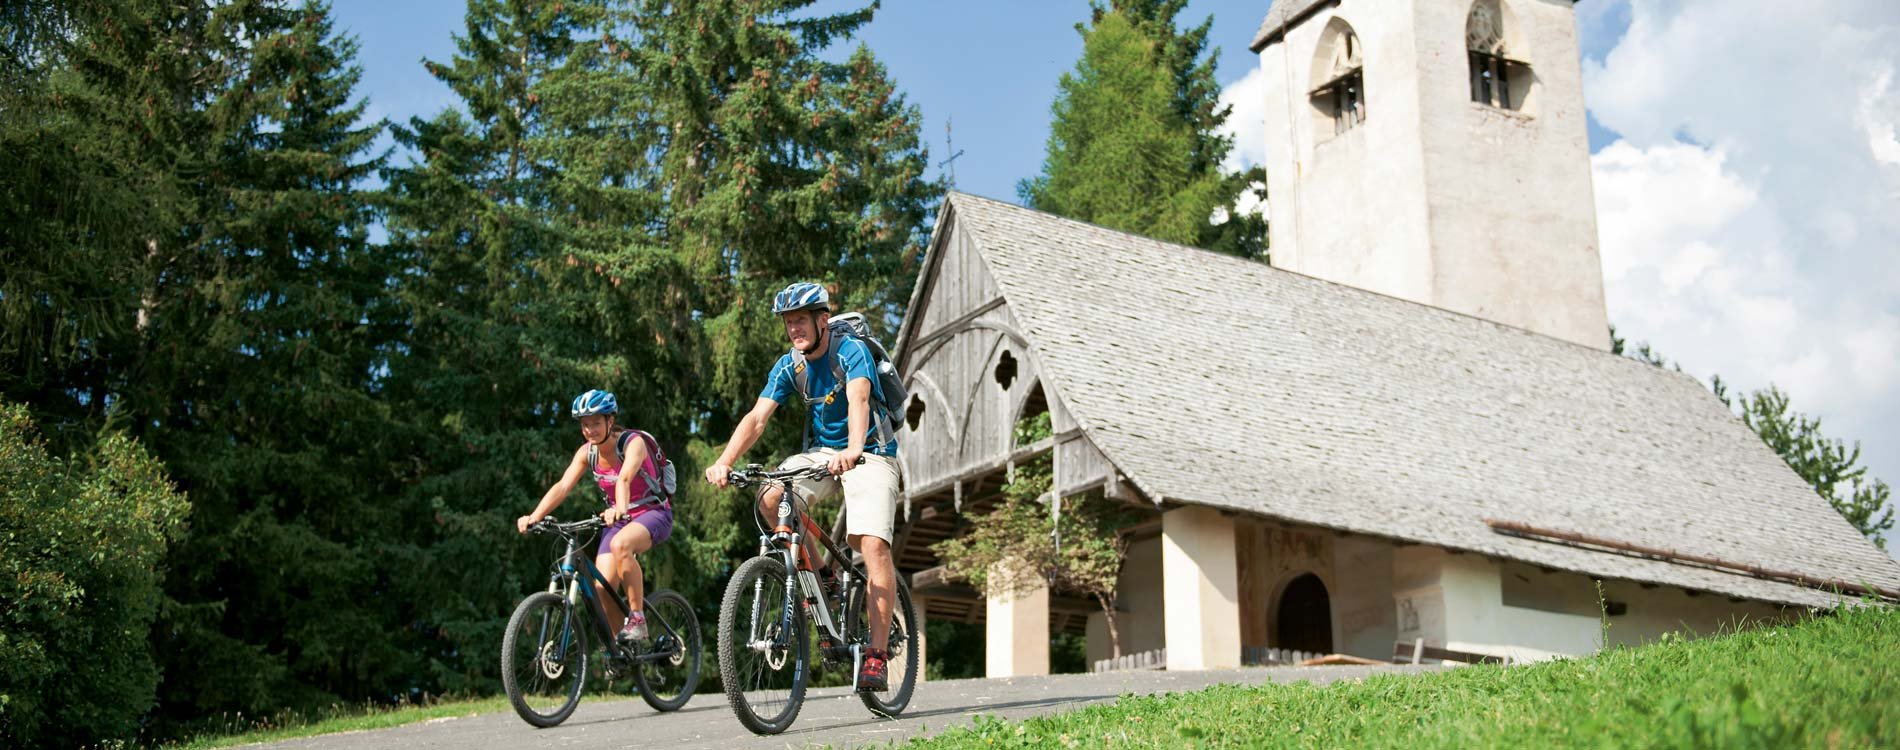 La Val d'Ega, la regione ideale per il mountain-bike 